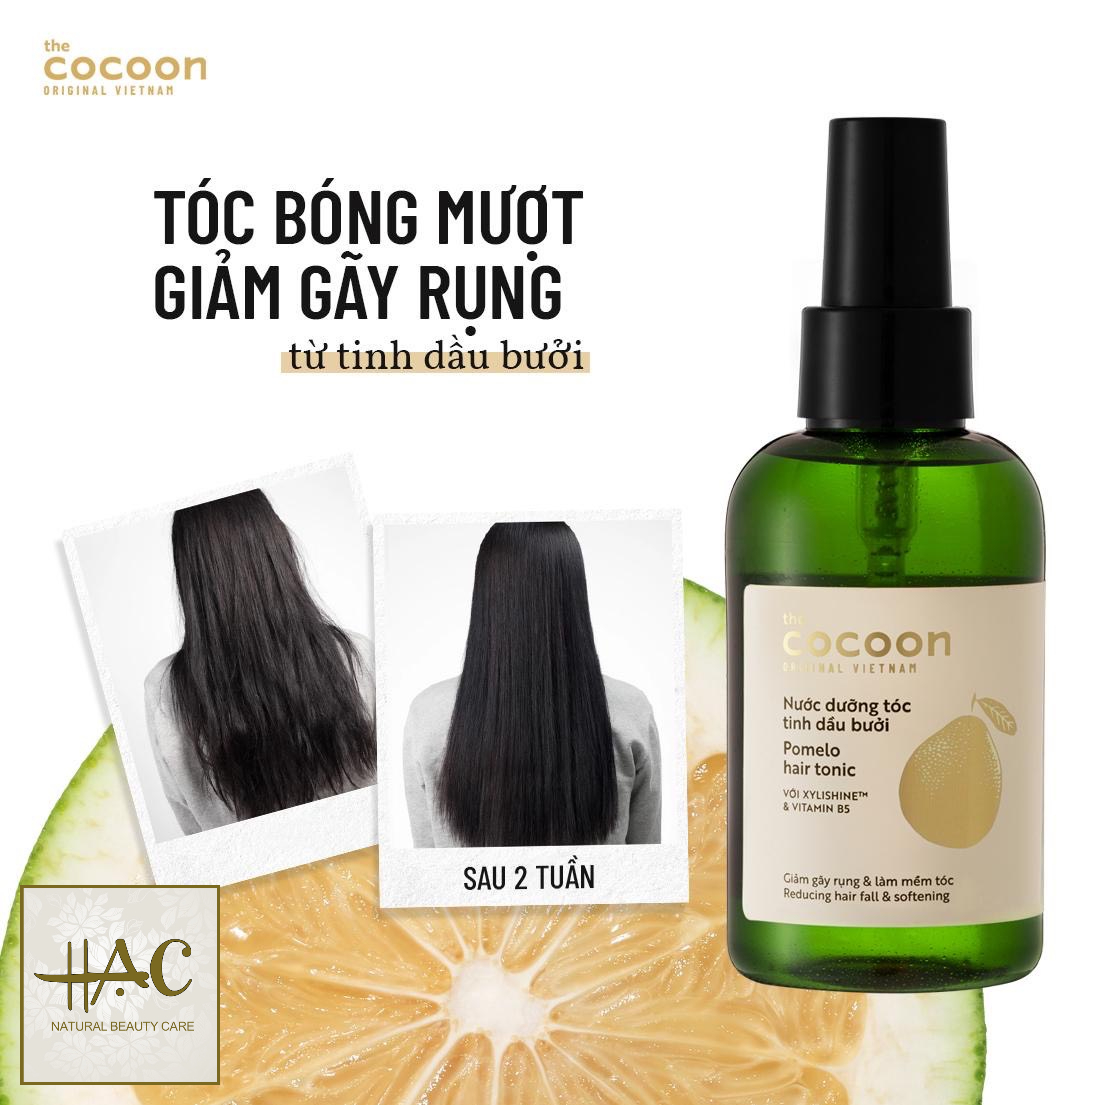 [ Chính hãng+ Quà tặng ] Nước dưỡng tóc tinh dầu Bưỡi chống gãy rụng, cung cấp dưỡng chất giúp tóc suôn mượt và mềm mại - Cocoon